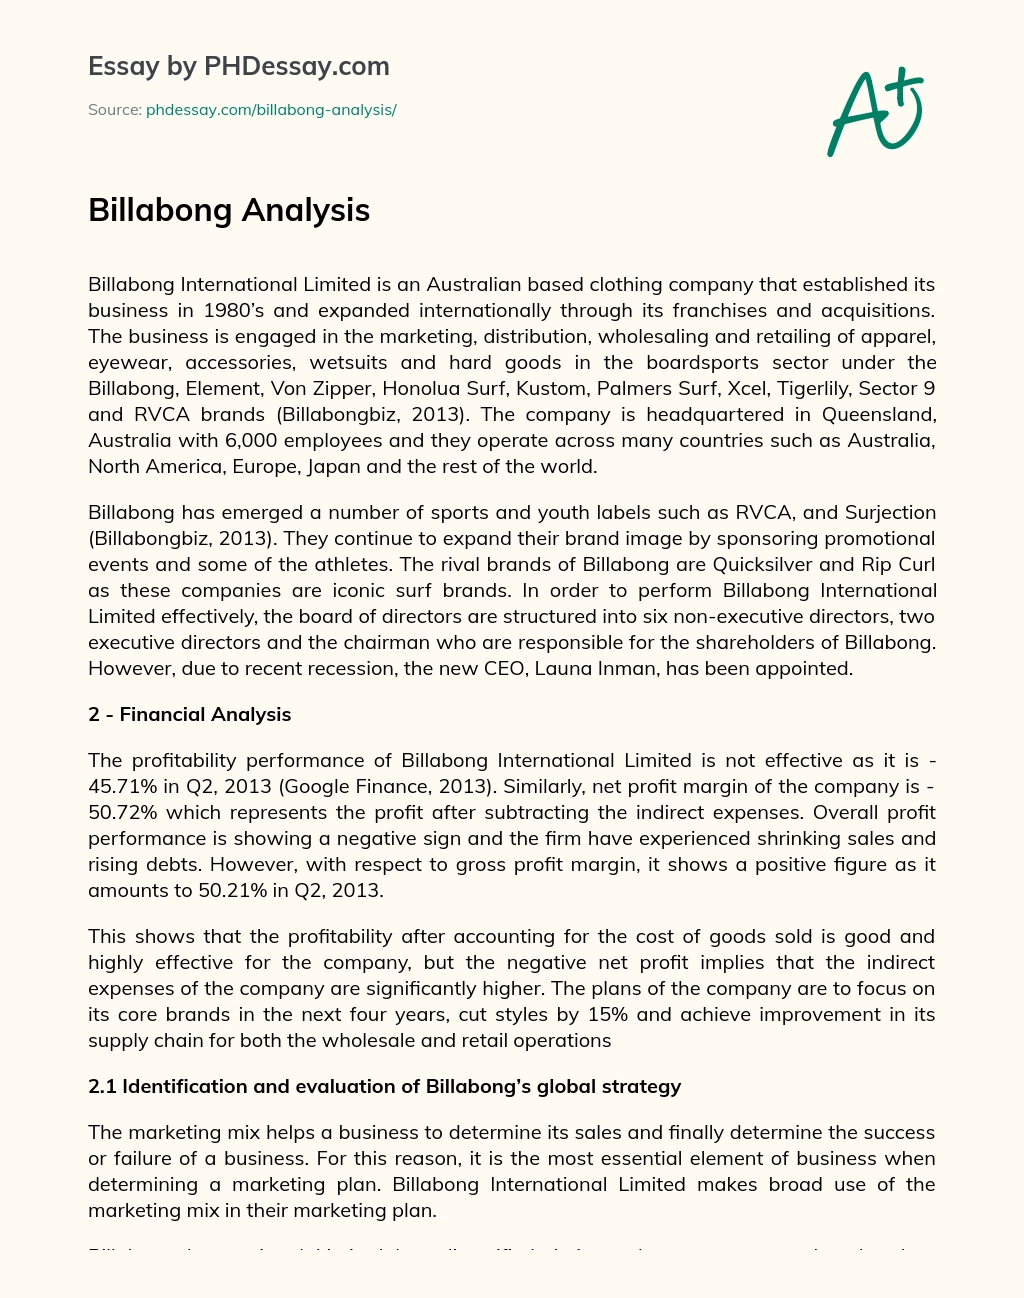 Billabong Analysis essay